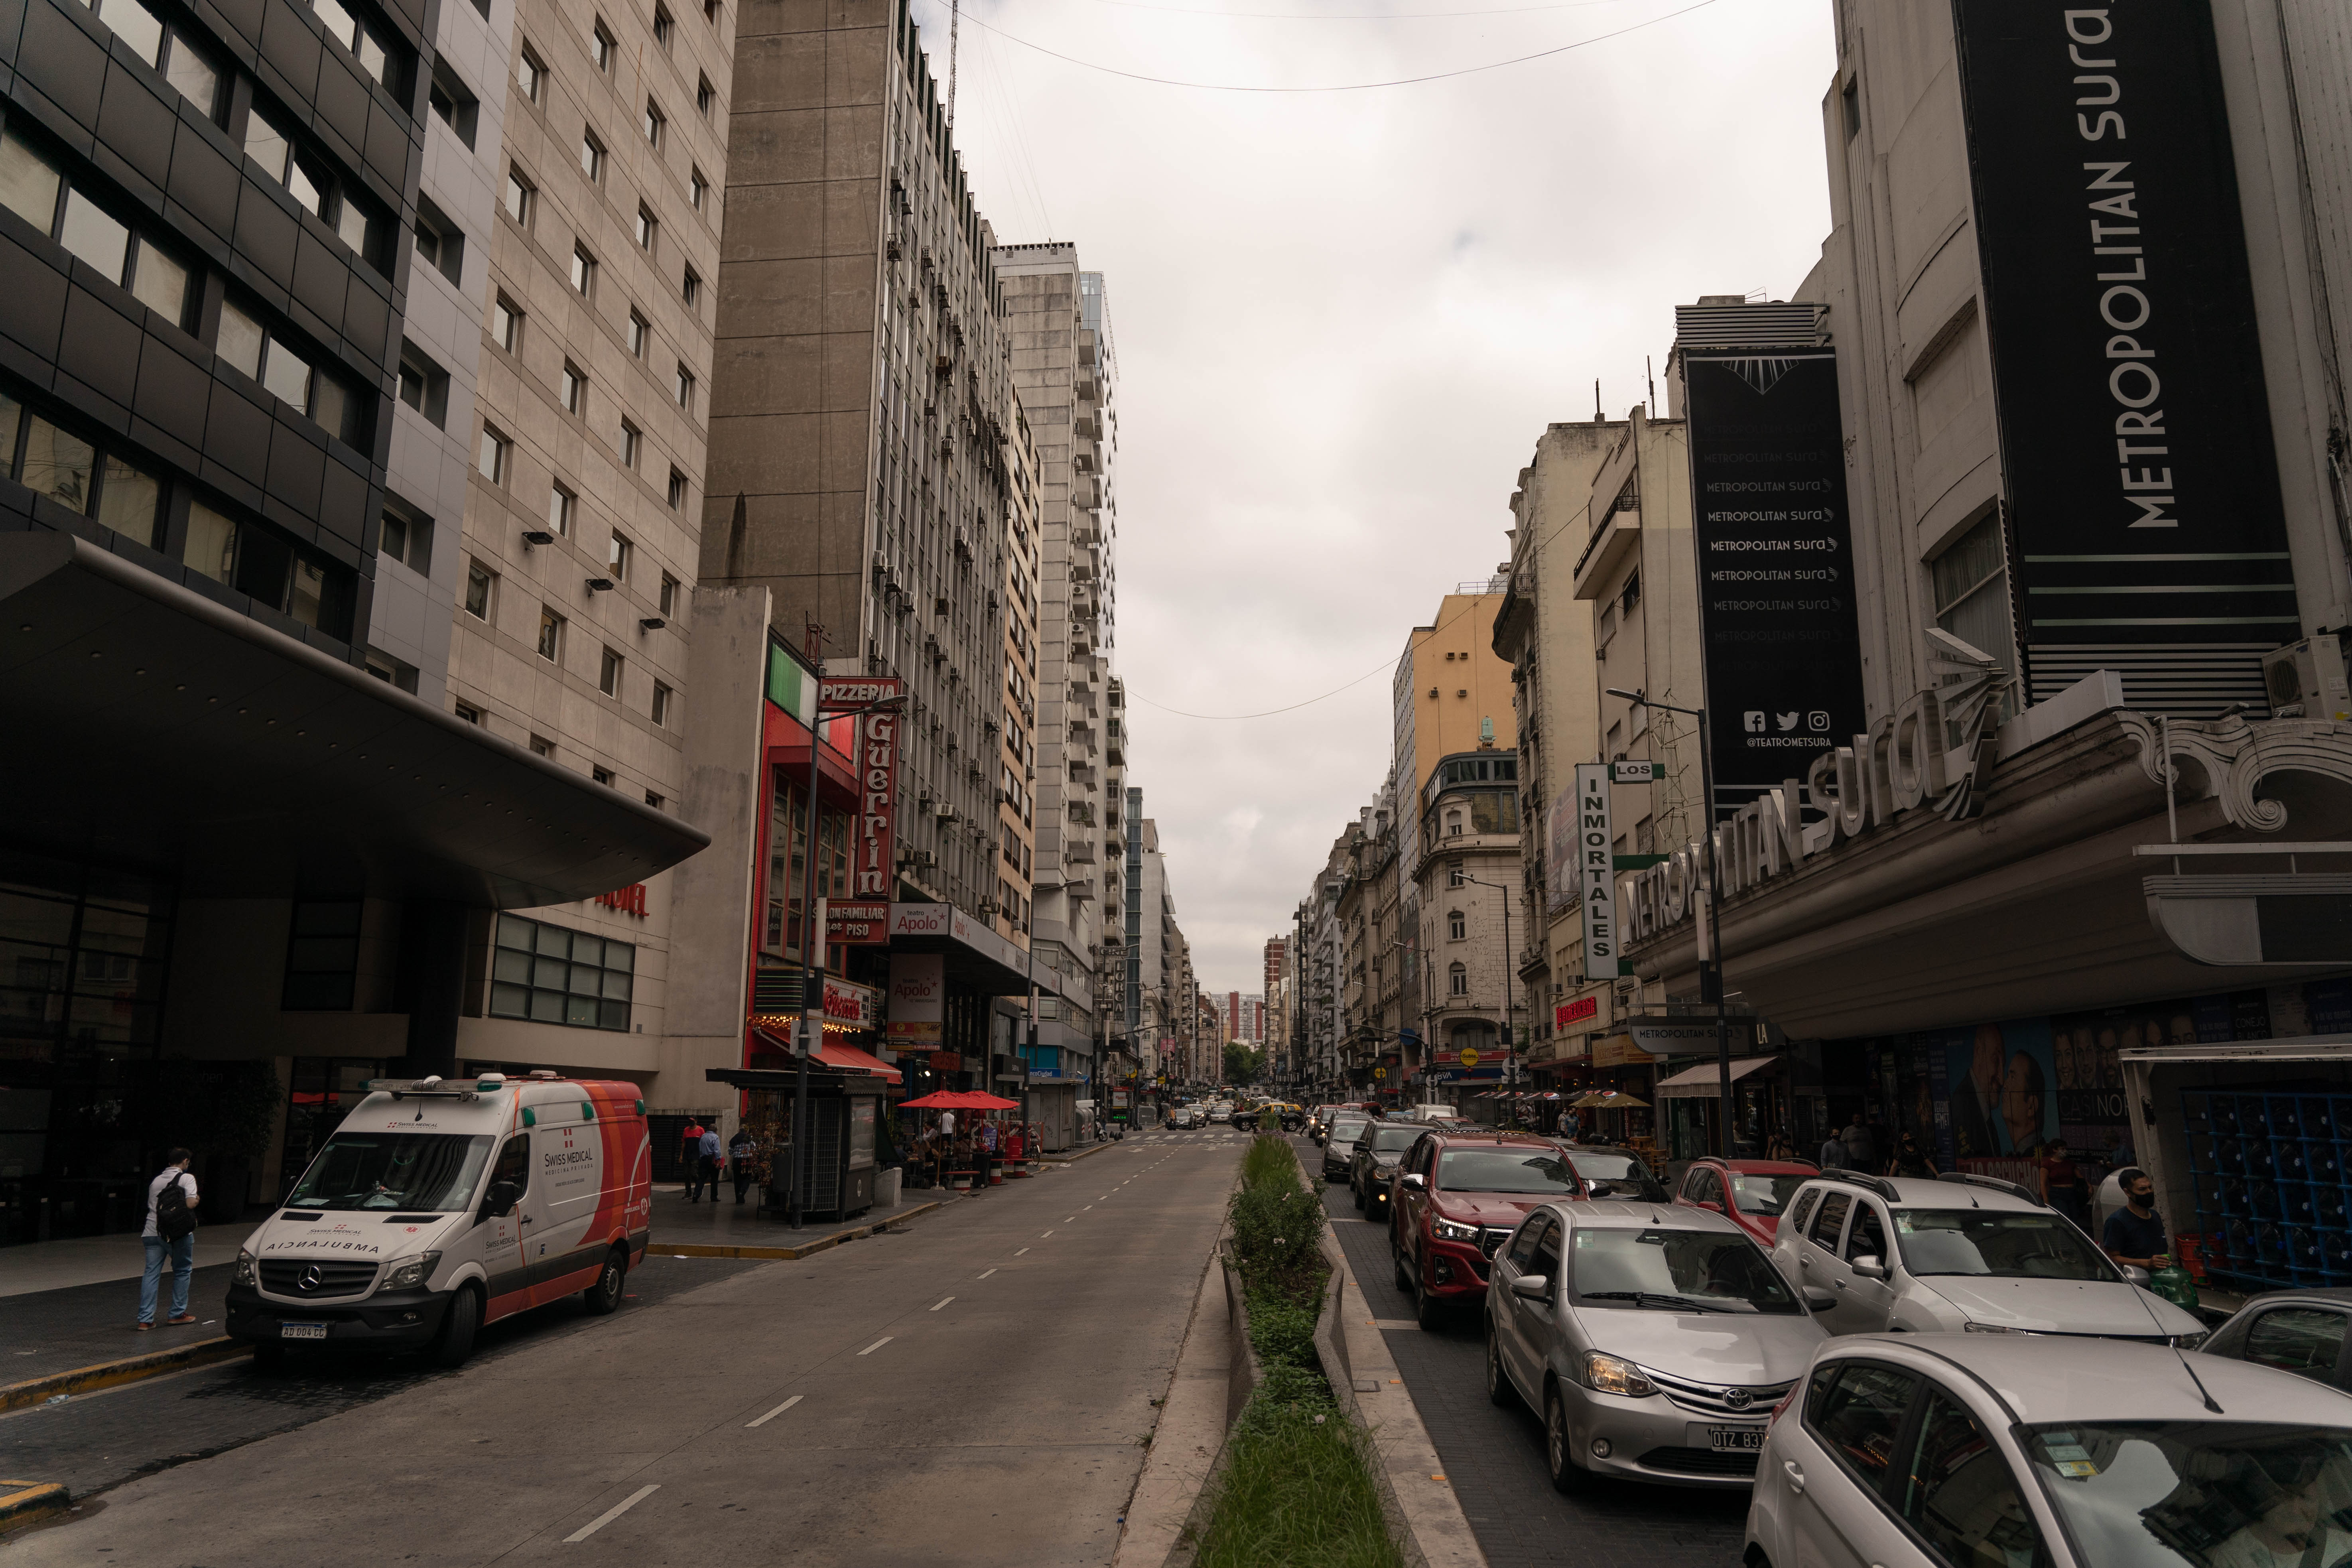 El microcentro porteño, uno de los barrios más afectados por la pandemia (Foto: Franco Fafasuli)